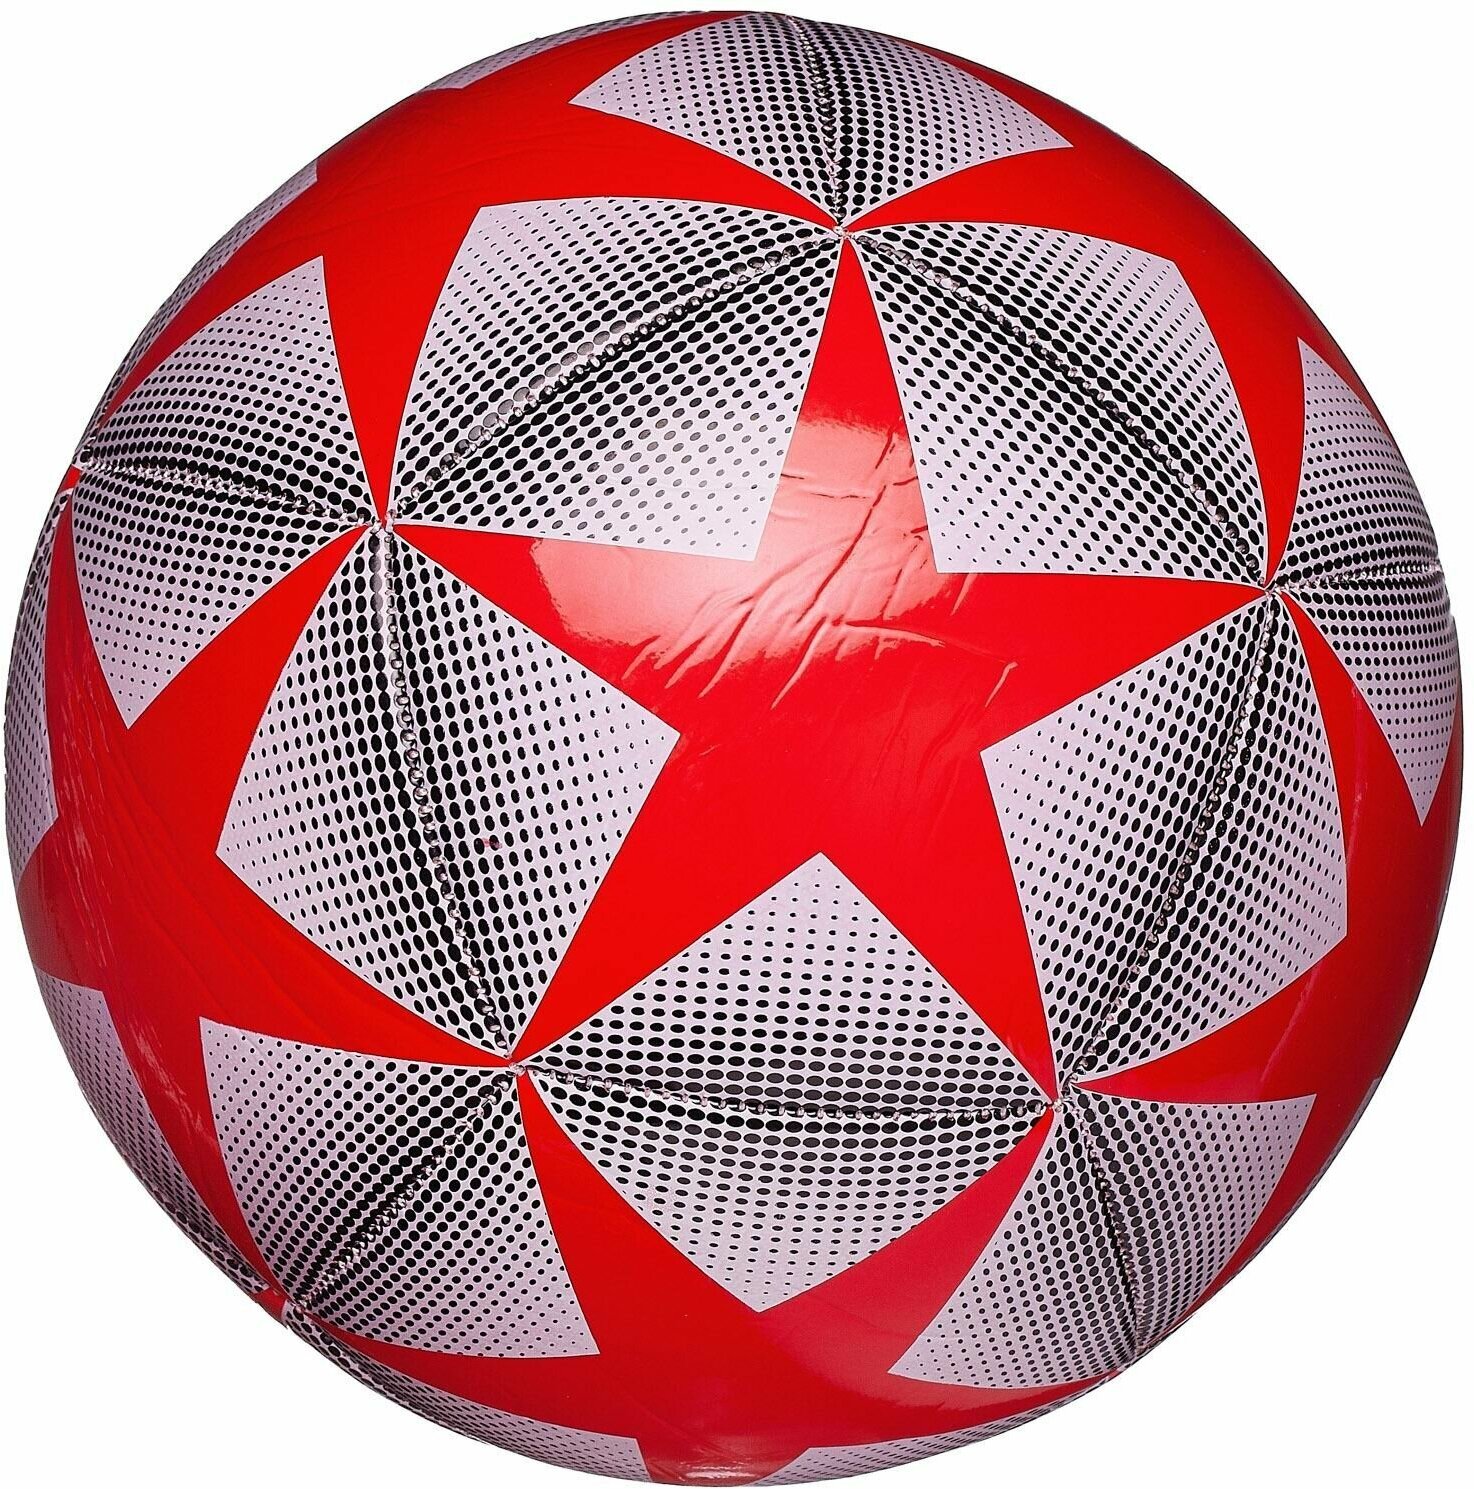 Футбольный мяч Junfa с красными звездами 22-23 см L398/красныезвезды